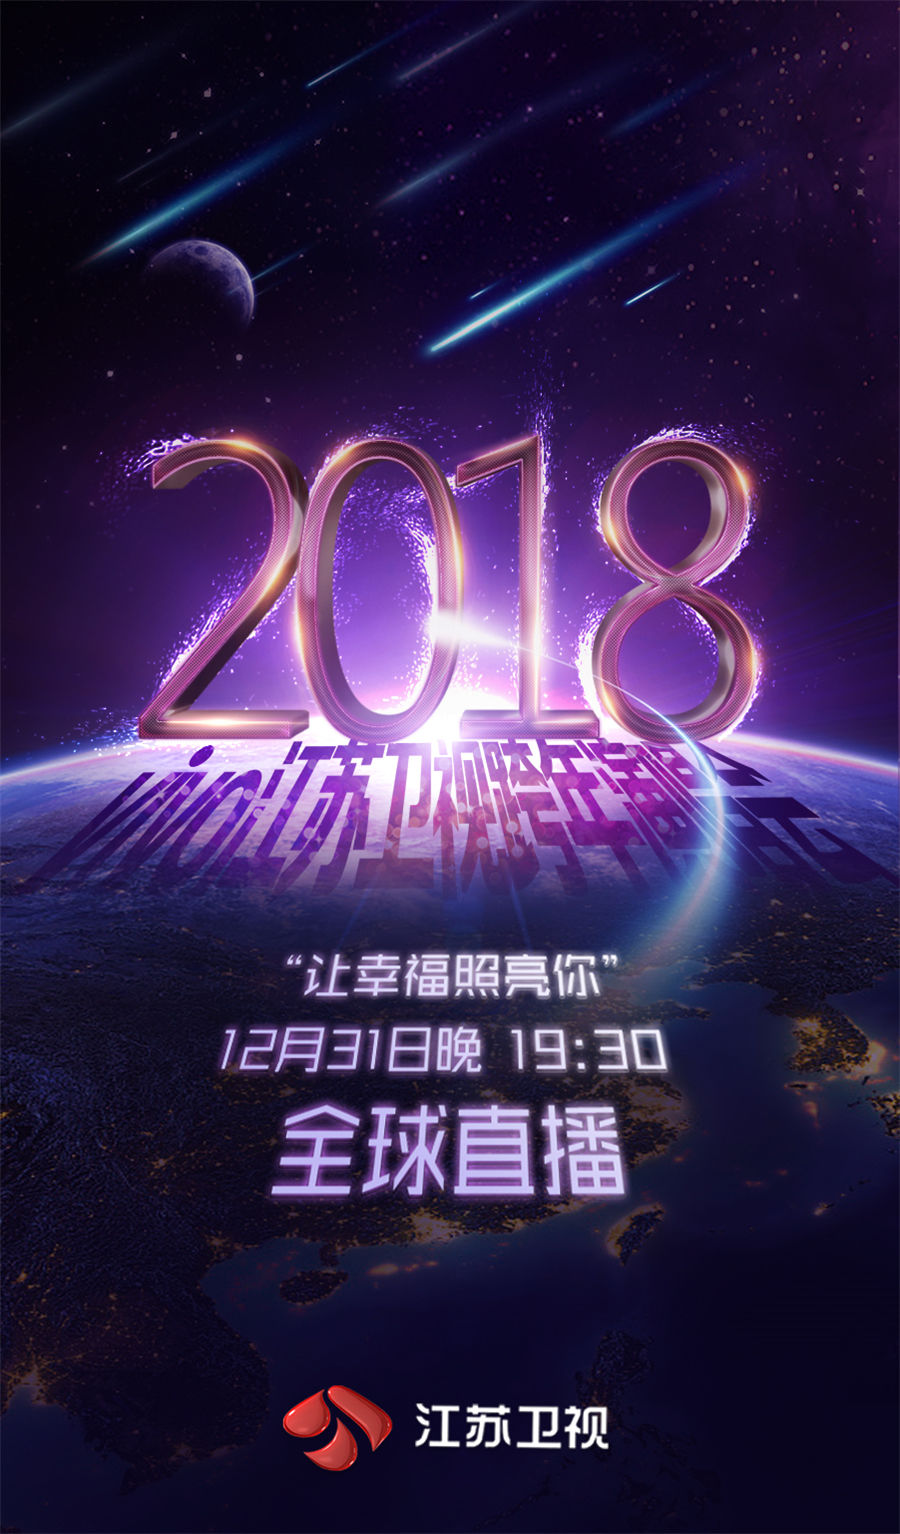 江苏卫视2018跨年演唱会率先启动 更科技更潮酷